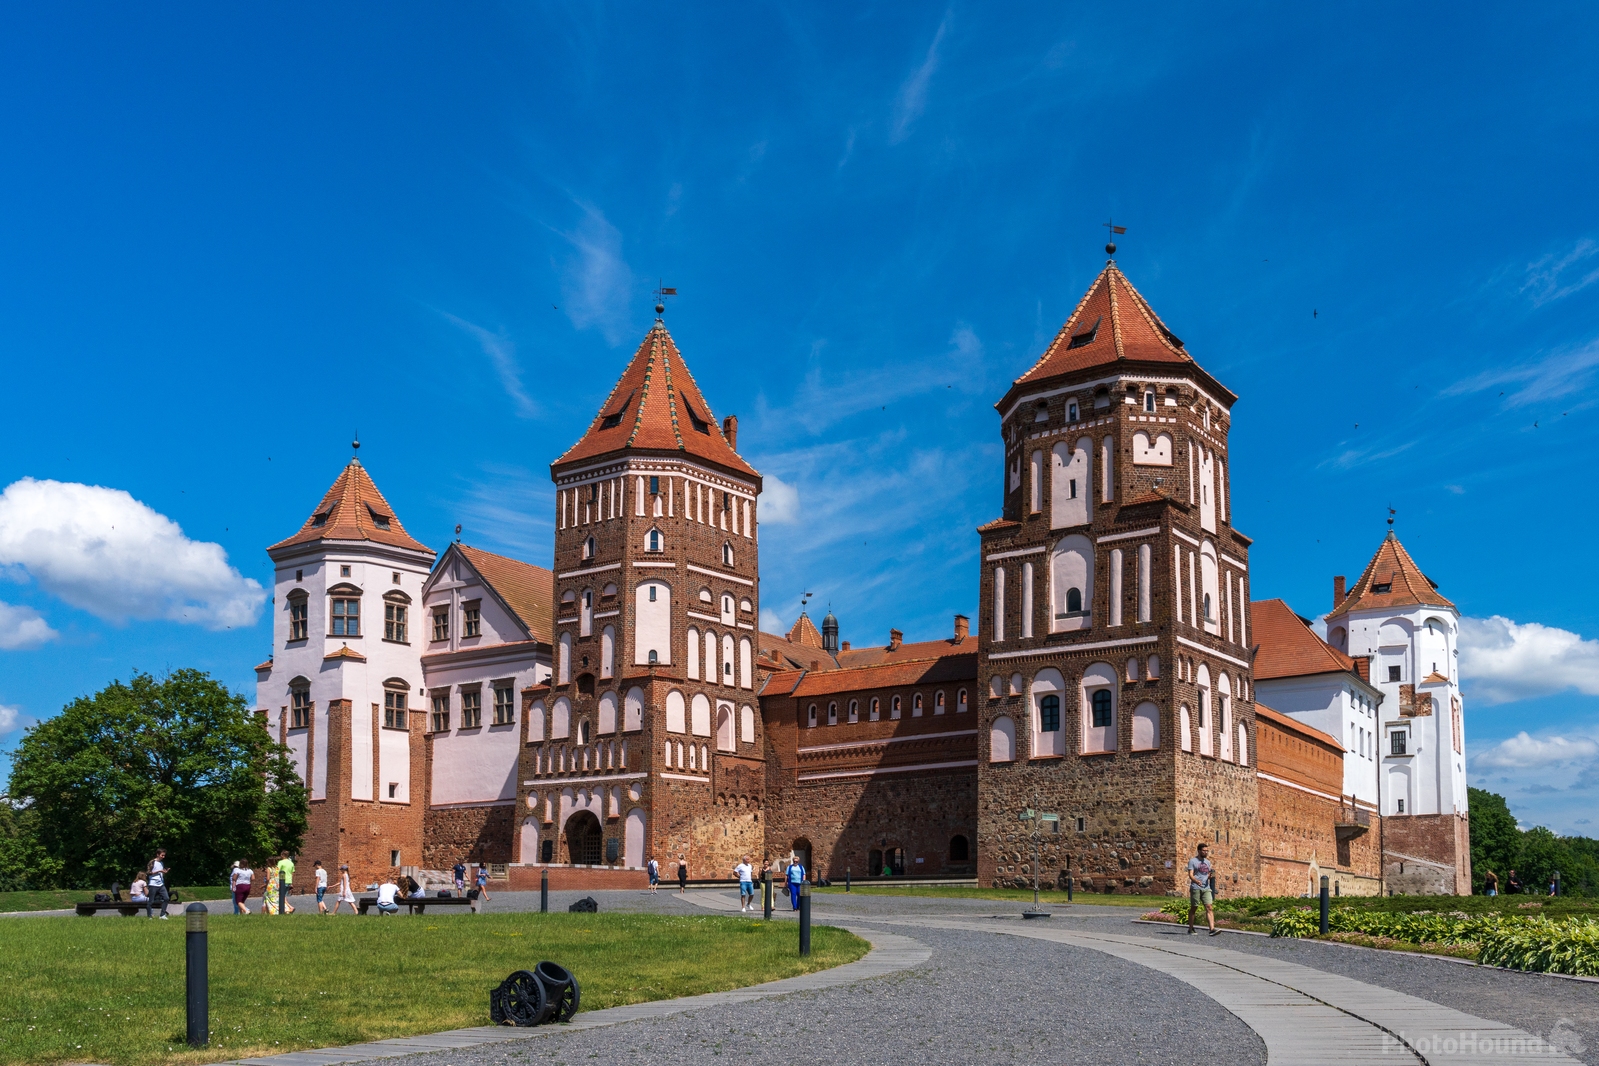 Image of Mir Castle, Belarus by Ilya Melnik